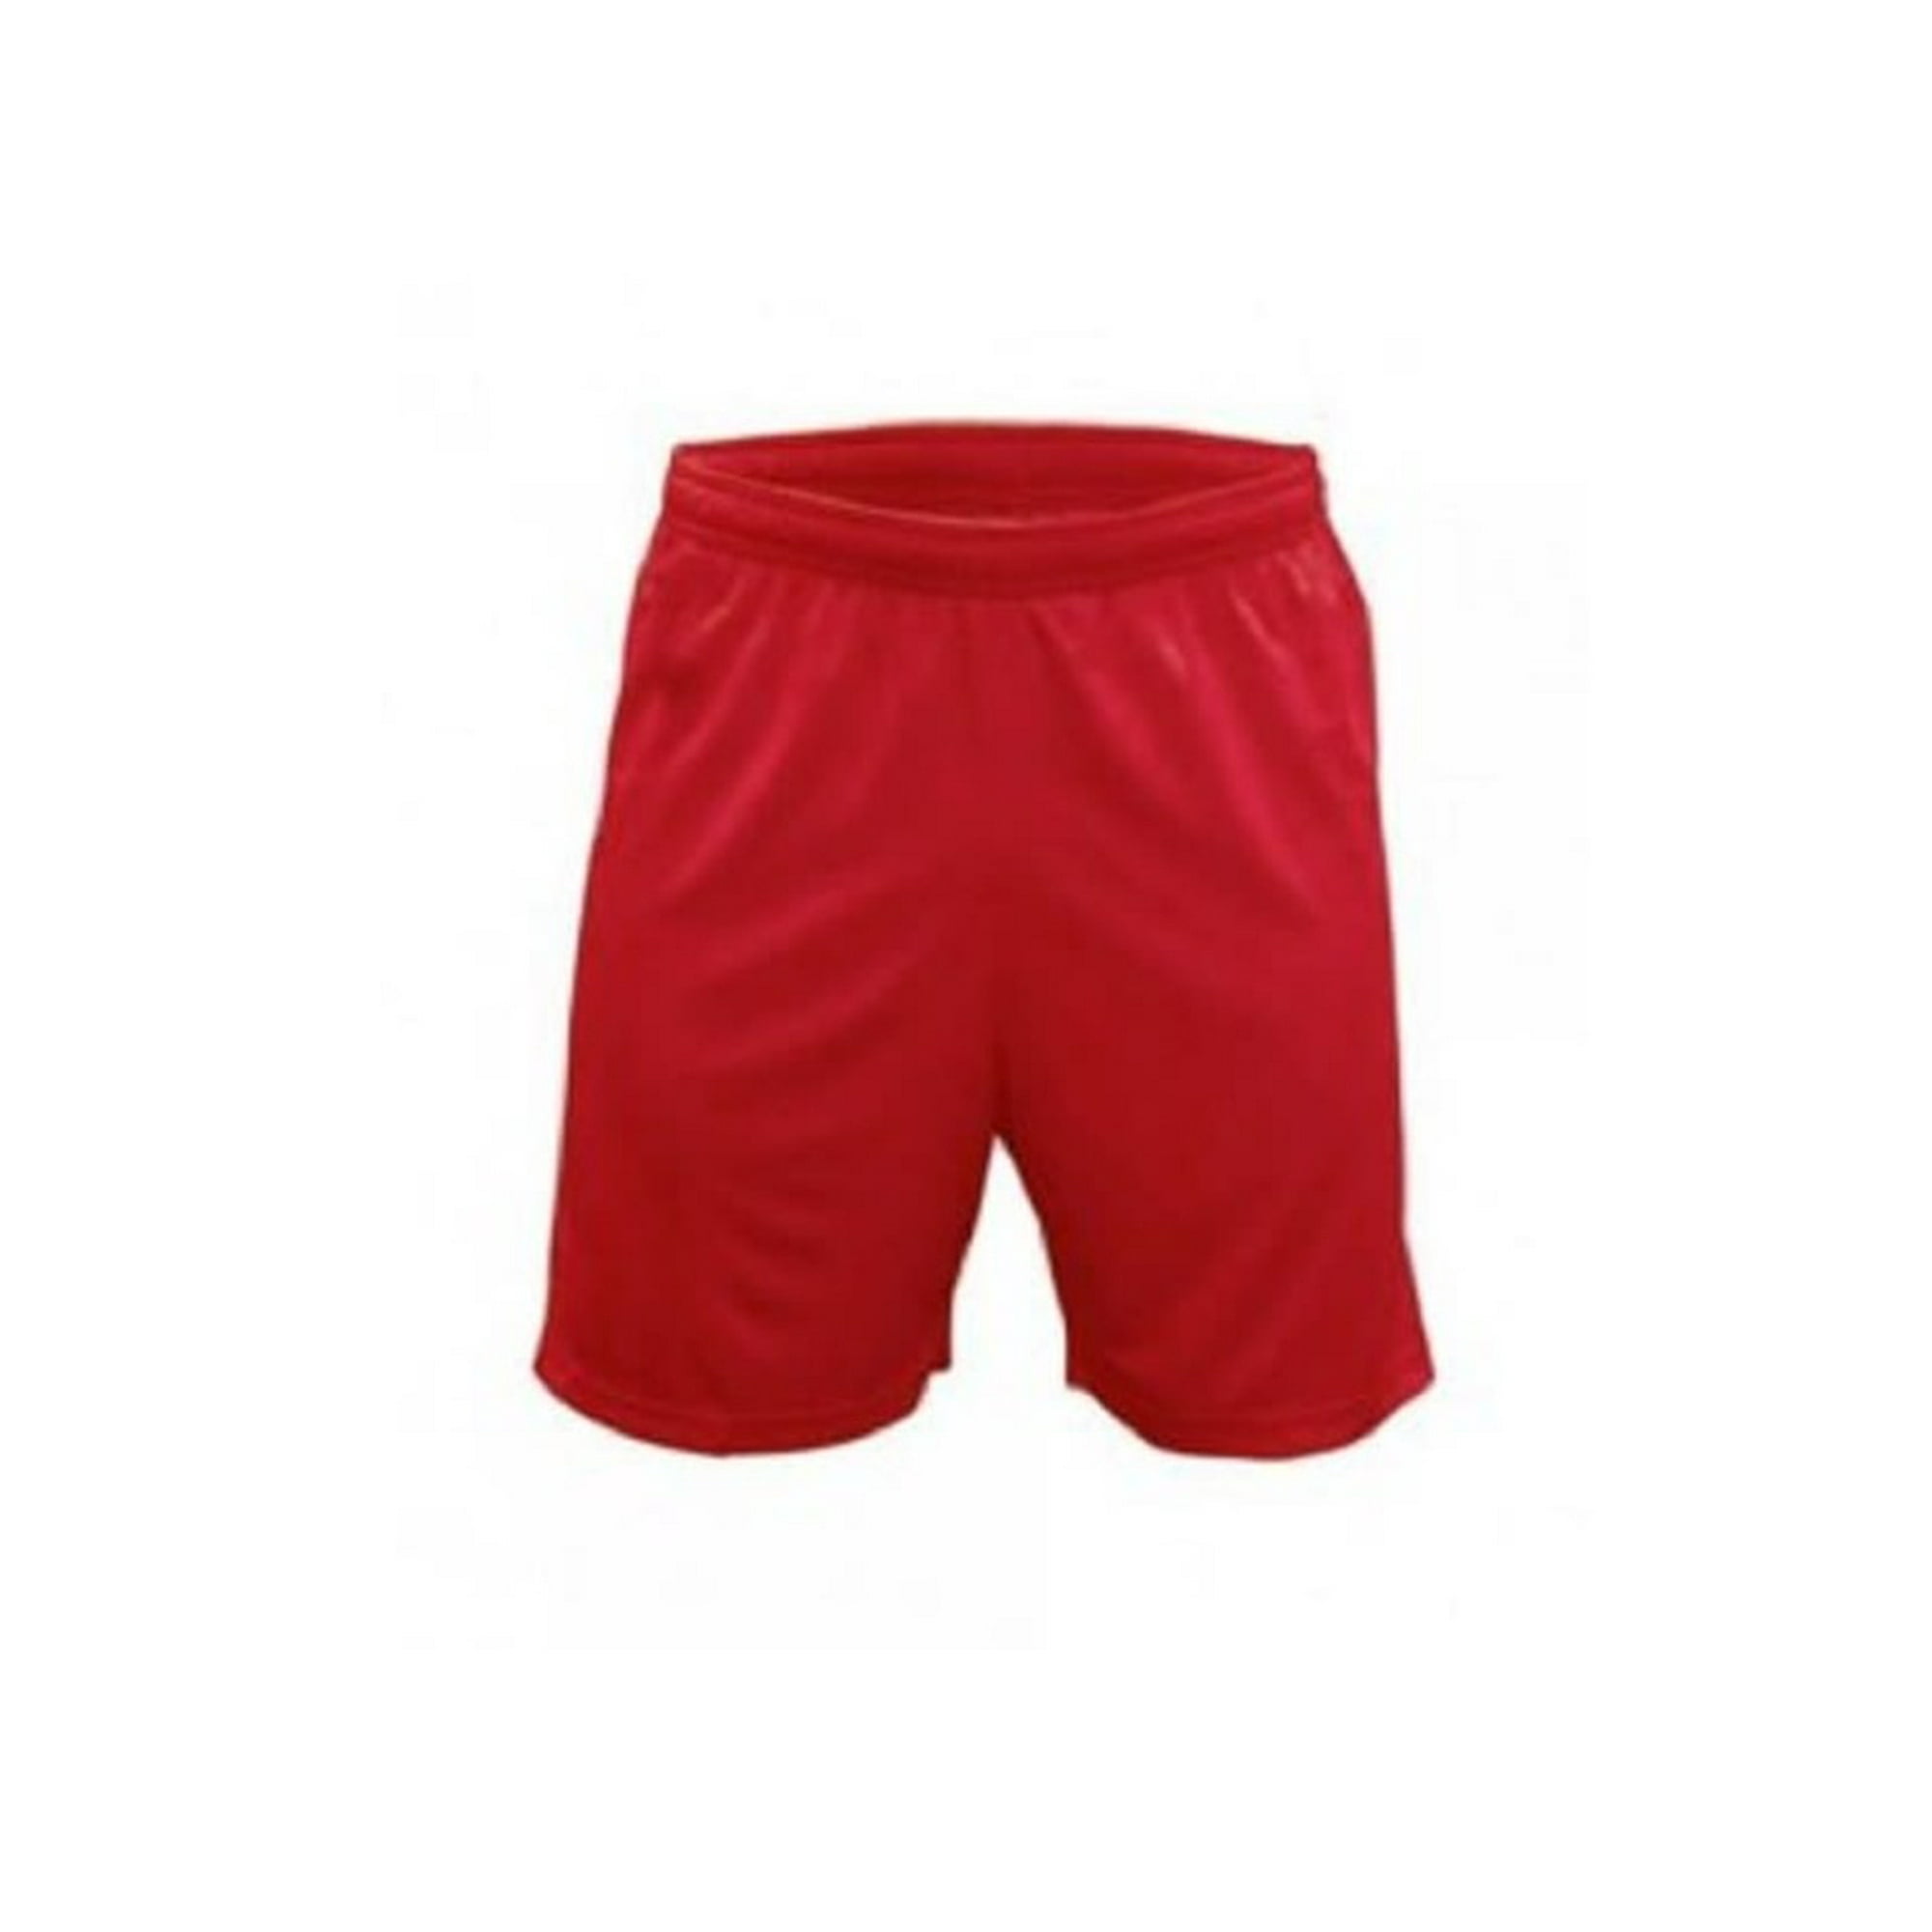 Short De Futbol Rojo Liso Costuras Reforzadas Talla M